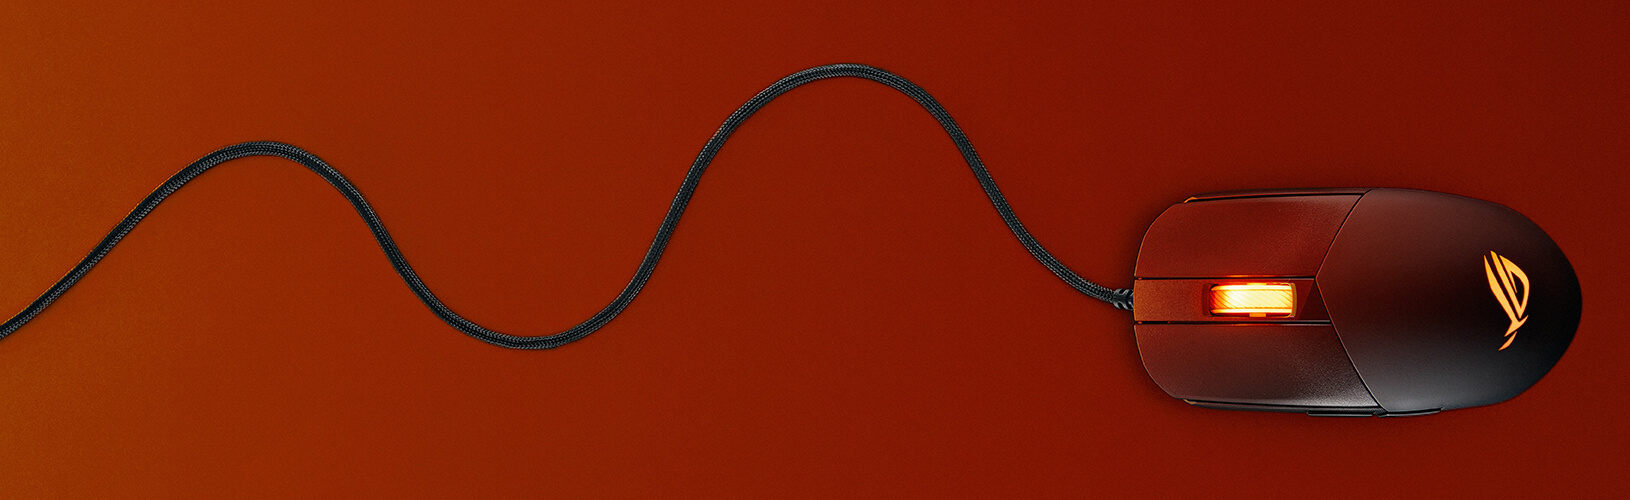 Ein Bild, das das flexible Paracord an der ROG Strix Impact III zeigt